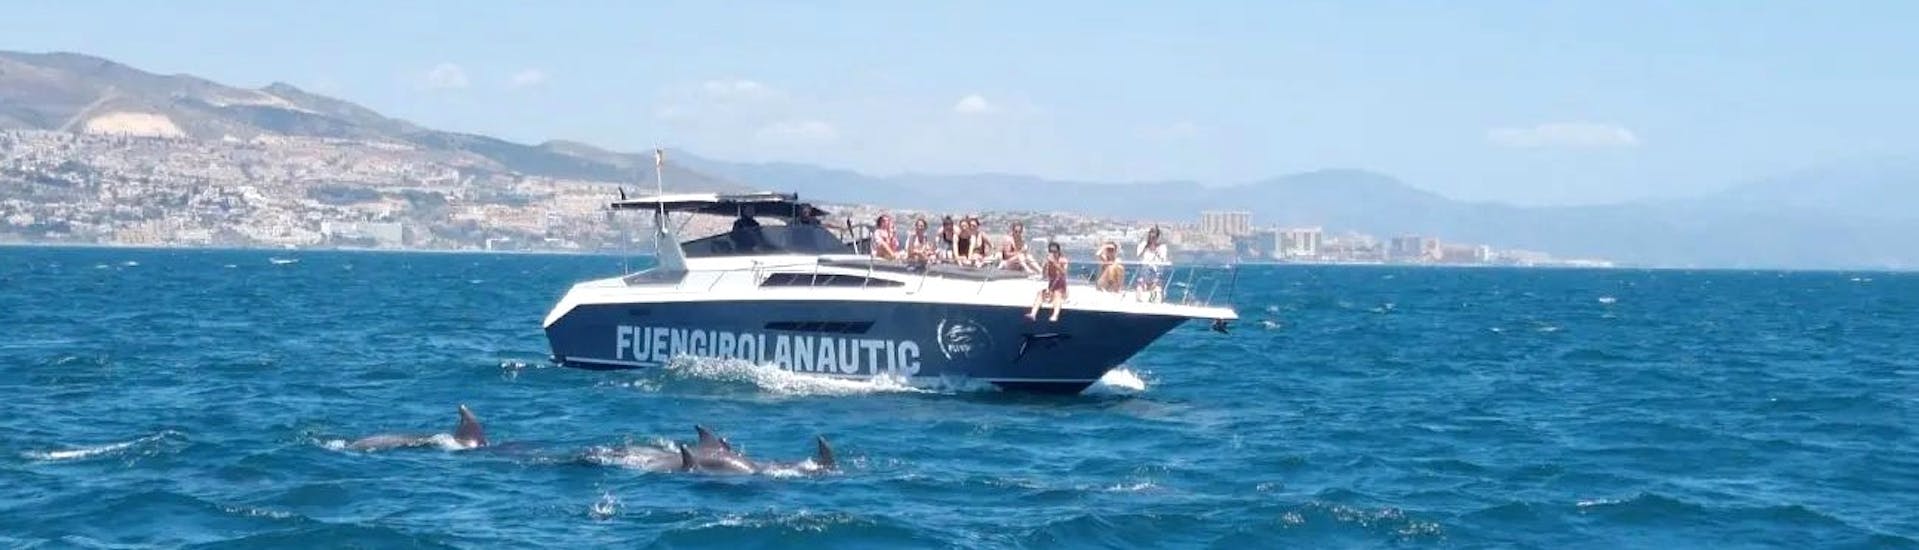 Personas observando delfines desde el barco durante una excursión semiprivada en barco desde Fuengirola con Dolphin Watching con Fuengirolanautic.